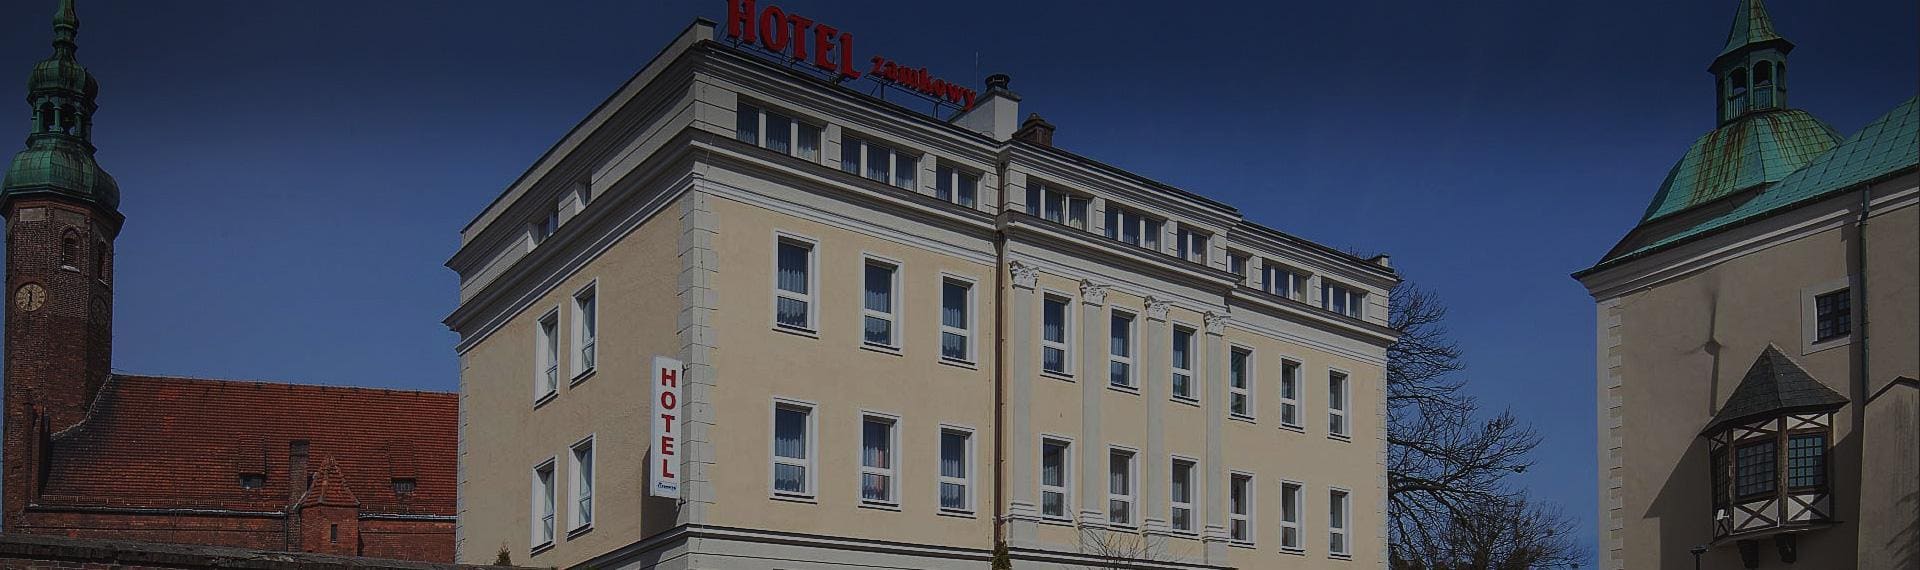 Hotele Przymorze w Słupsku